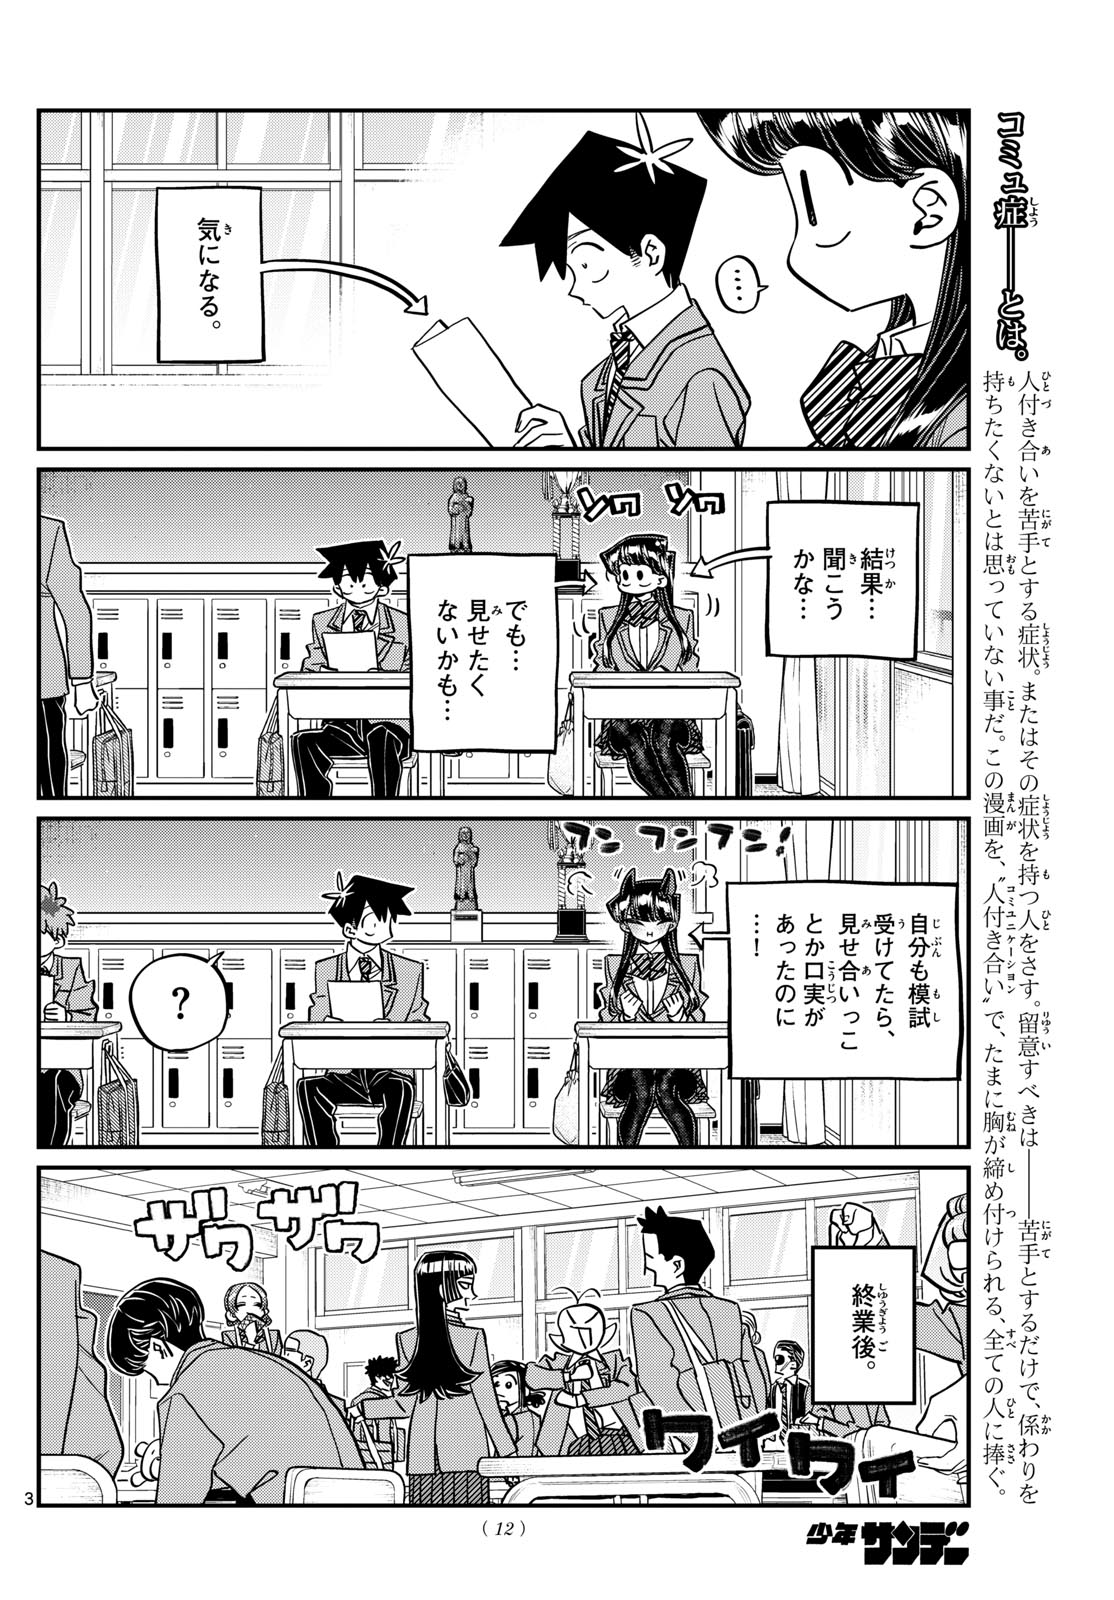 Komi-san wa Komyushou Desu - Chapter 472 - Page 3